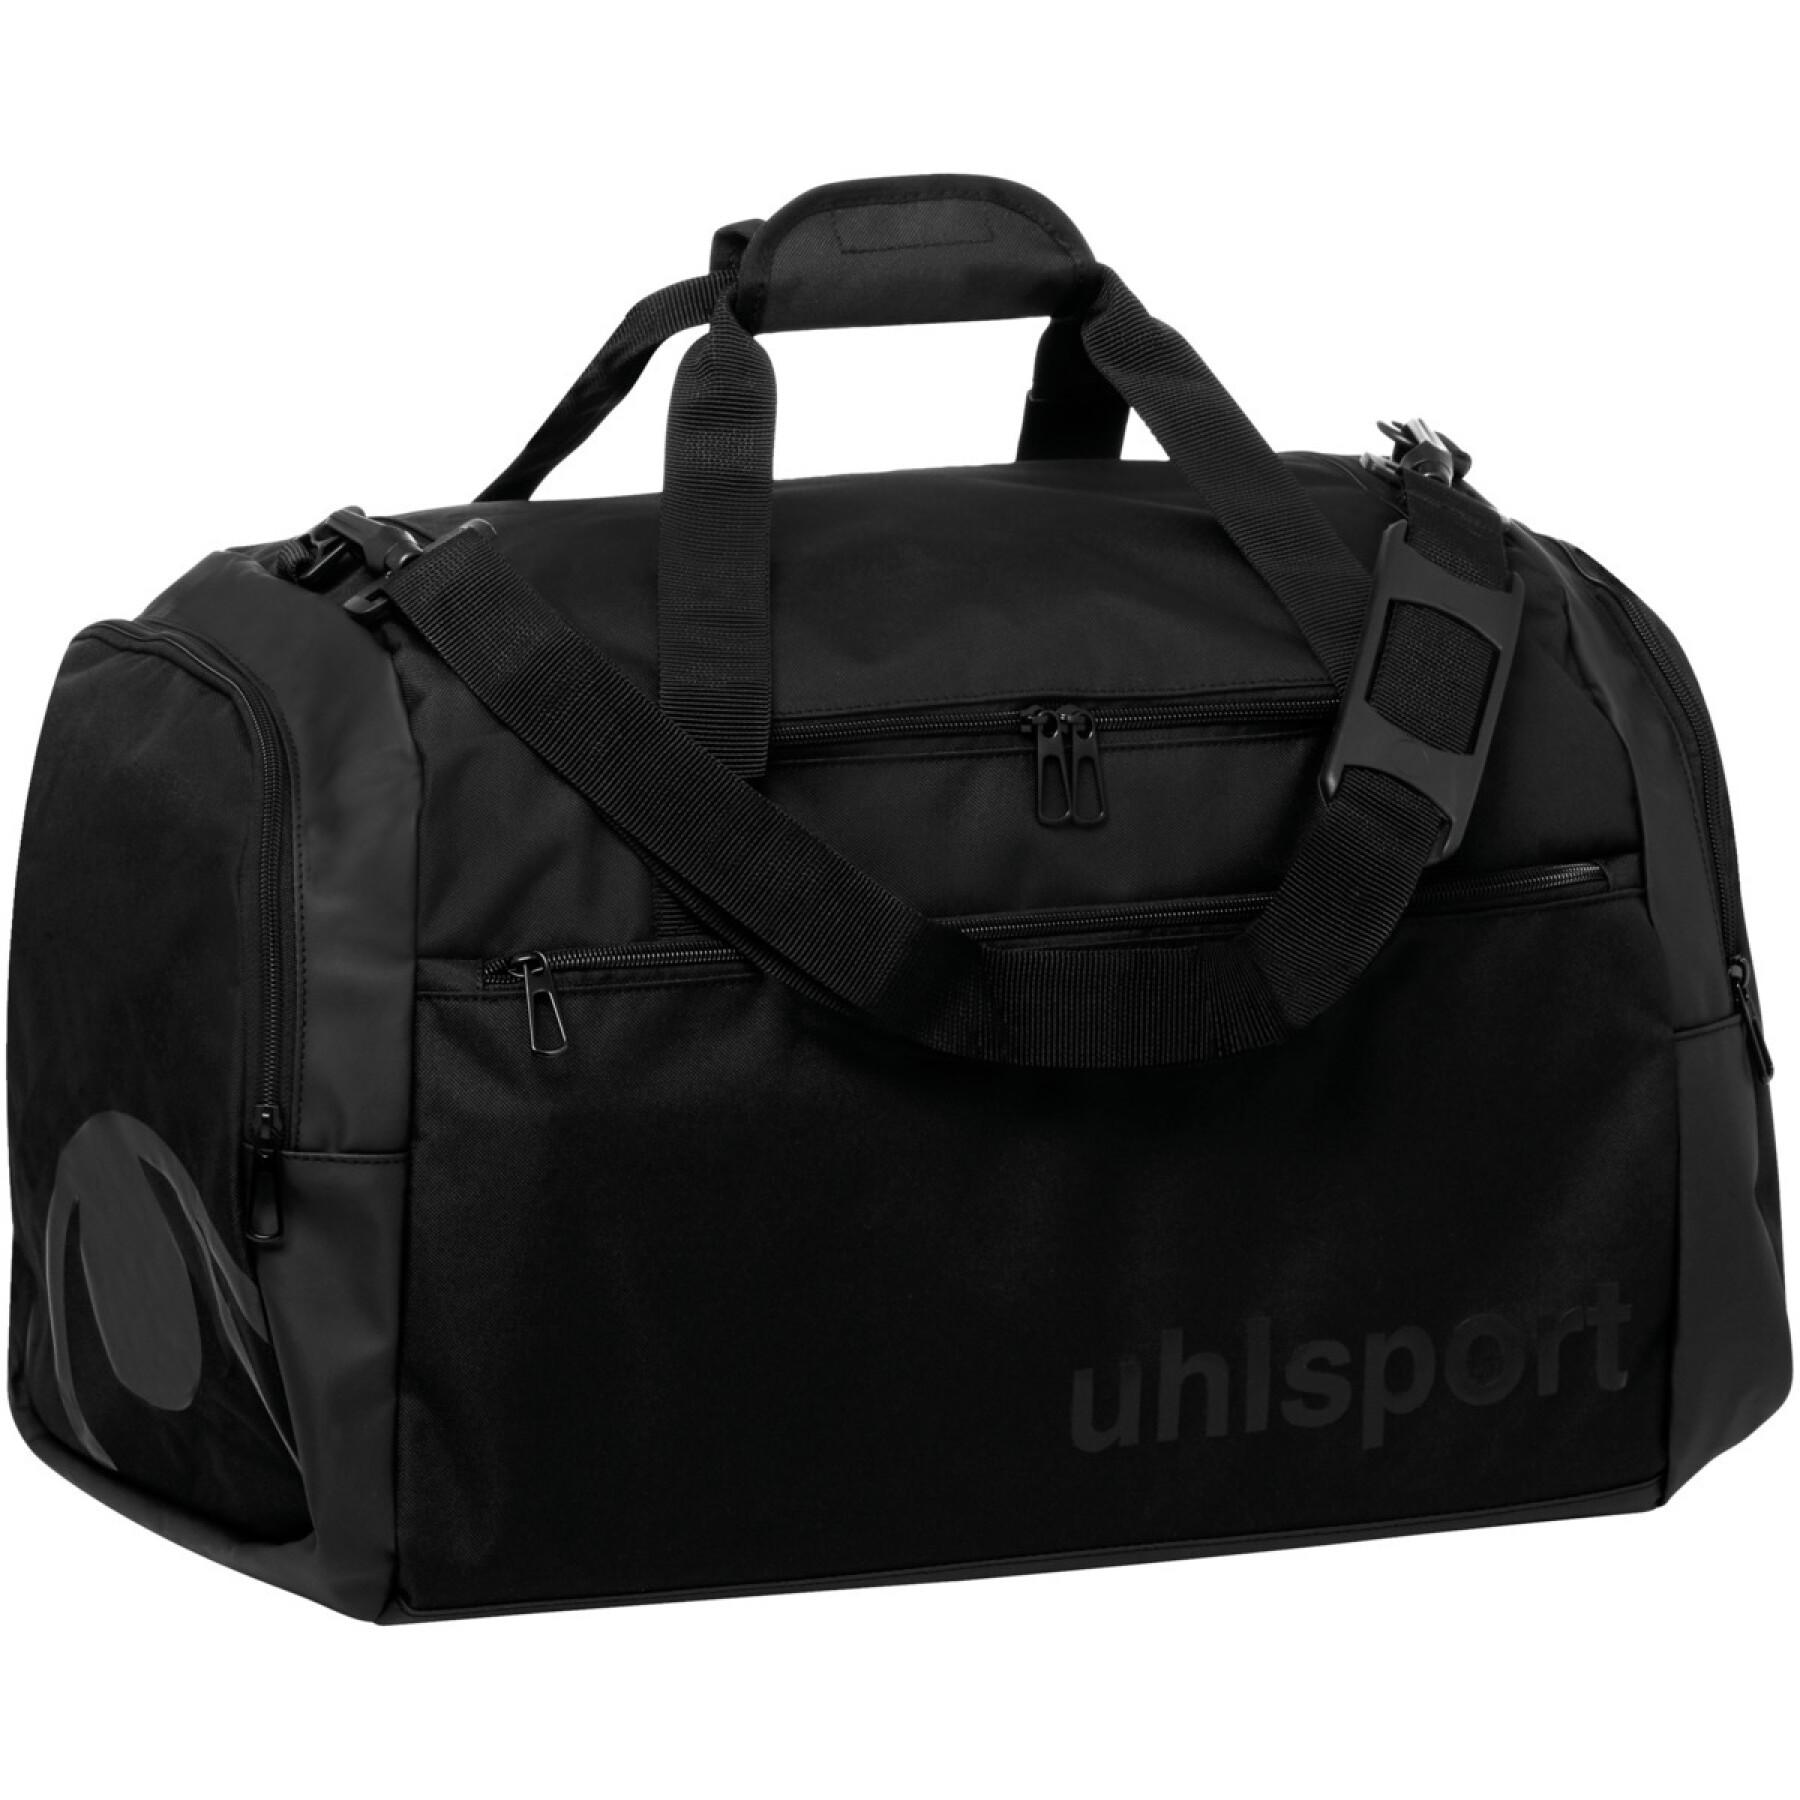 Sports bag Uhlsport Essential 75 L